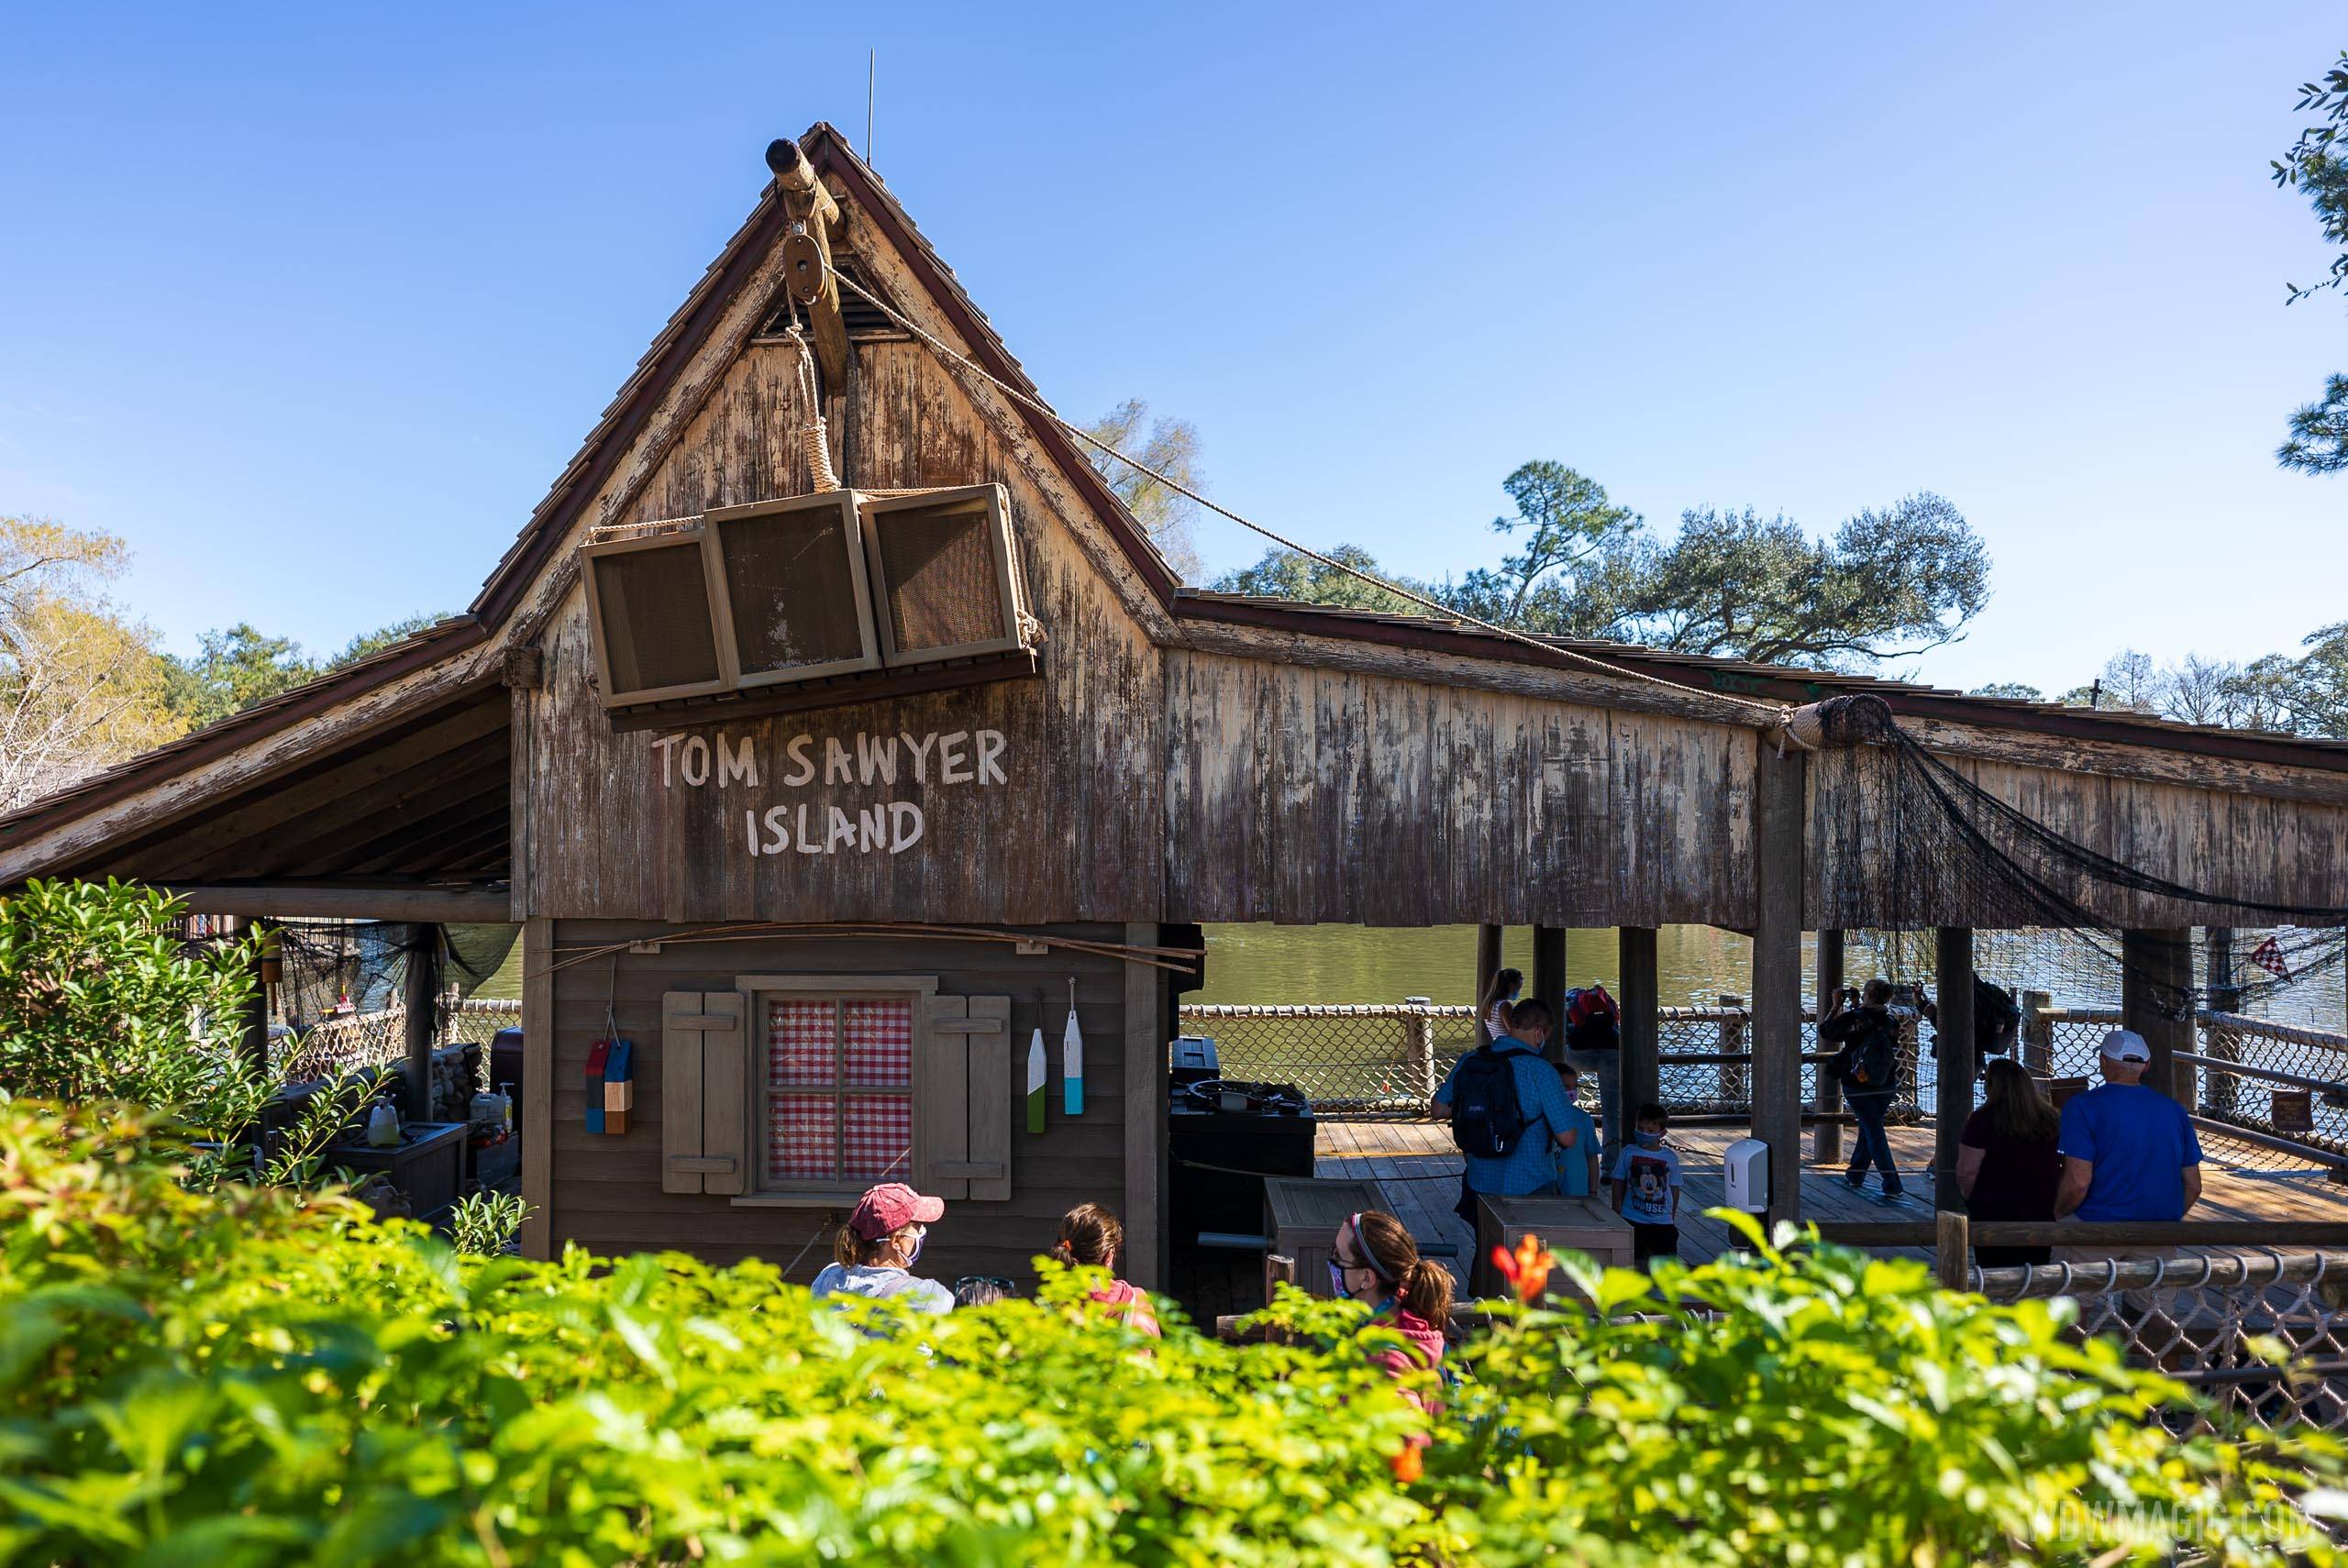 Tom Sawyer Island reopening February 2021